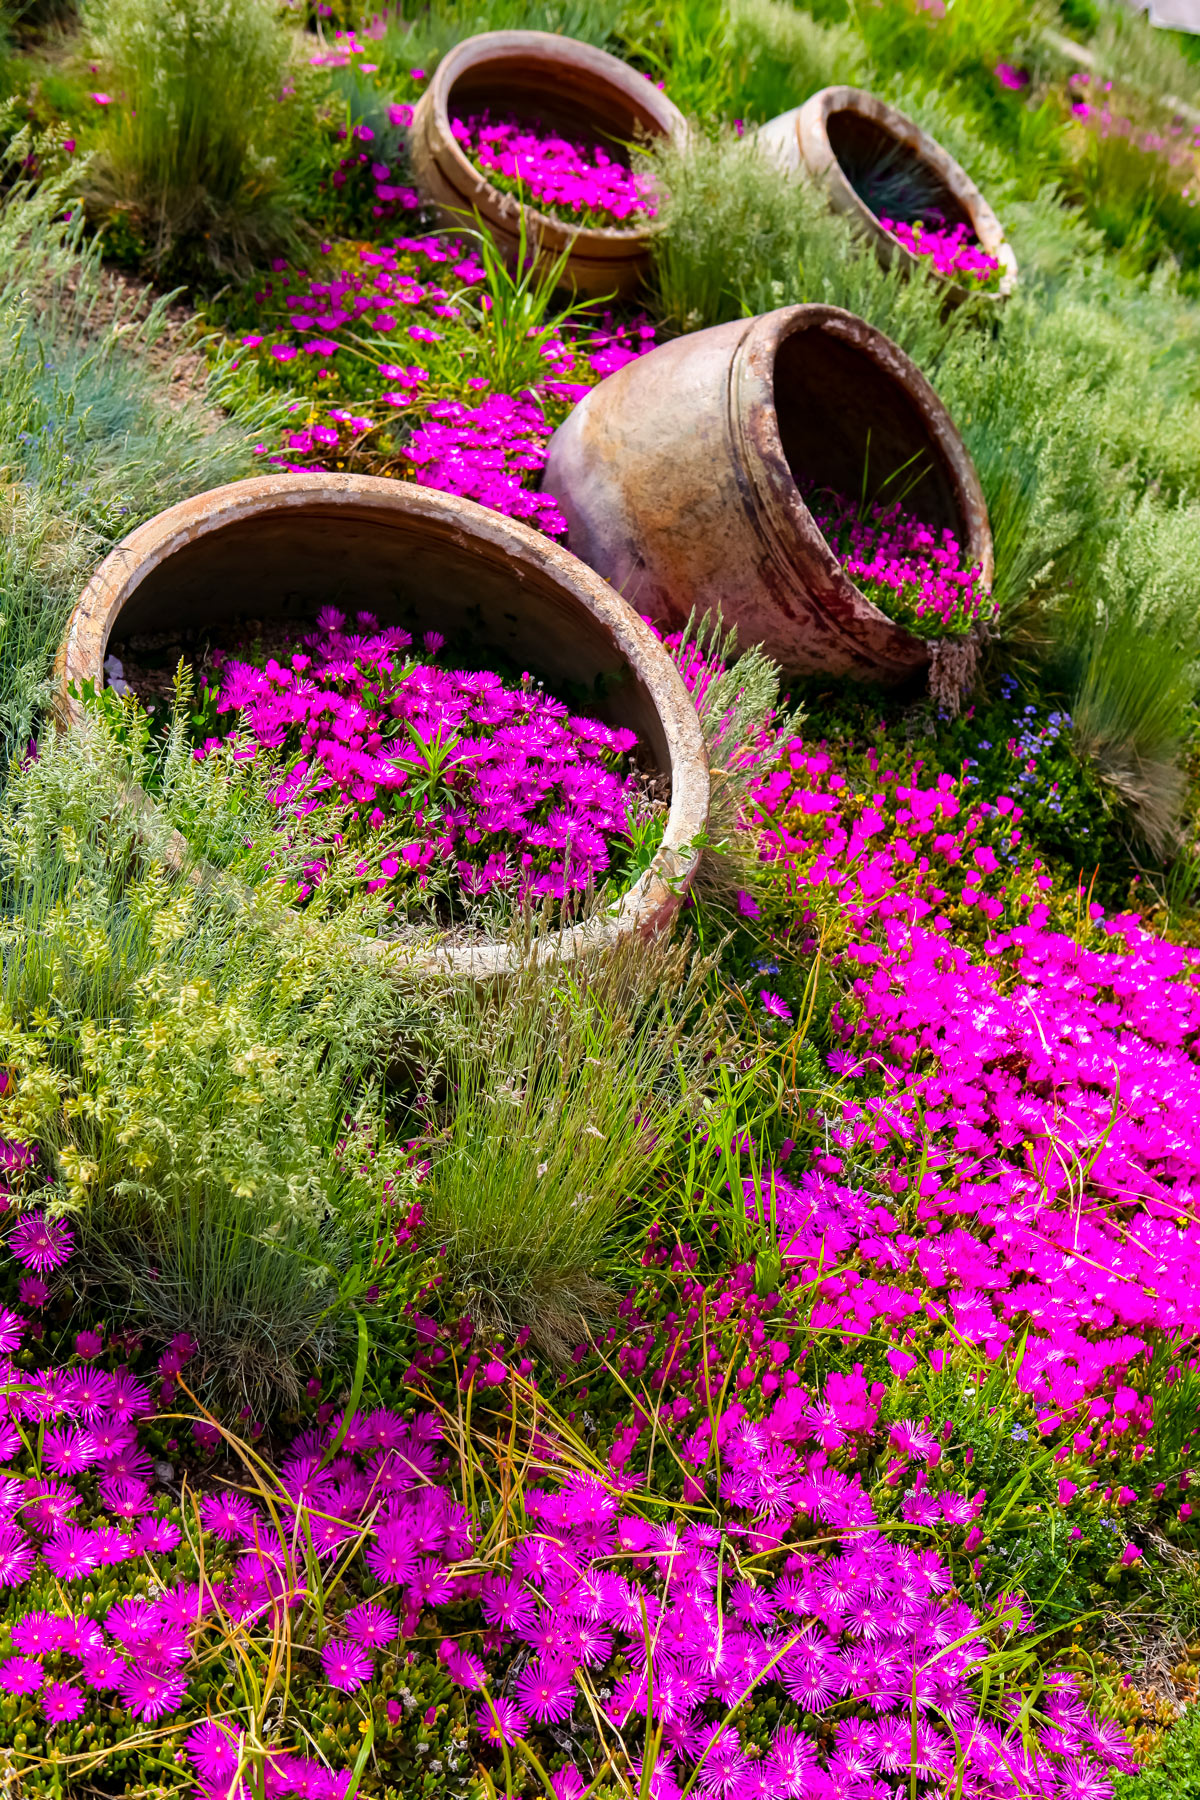 pIanta grassa con fiorellini rosa molto presente nei giardini degli italiani